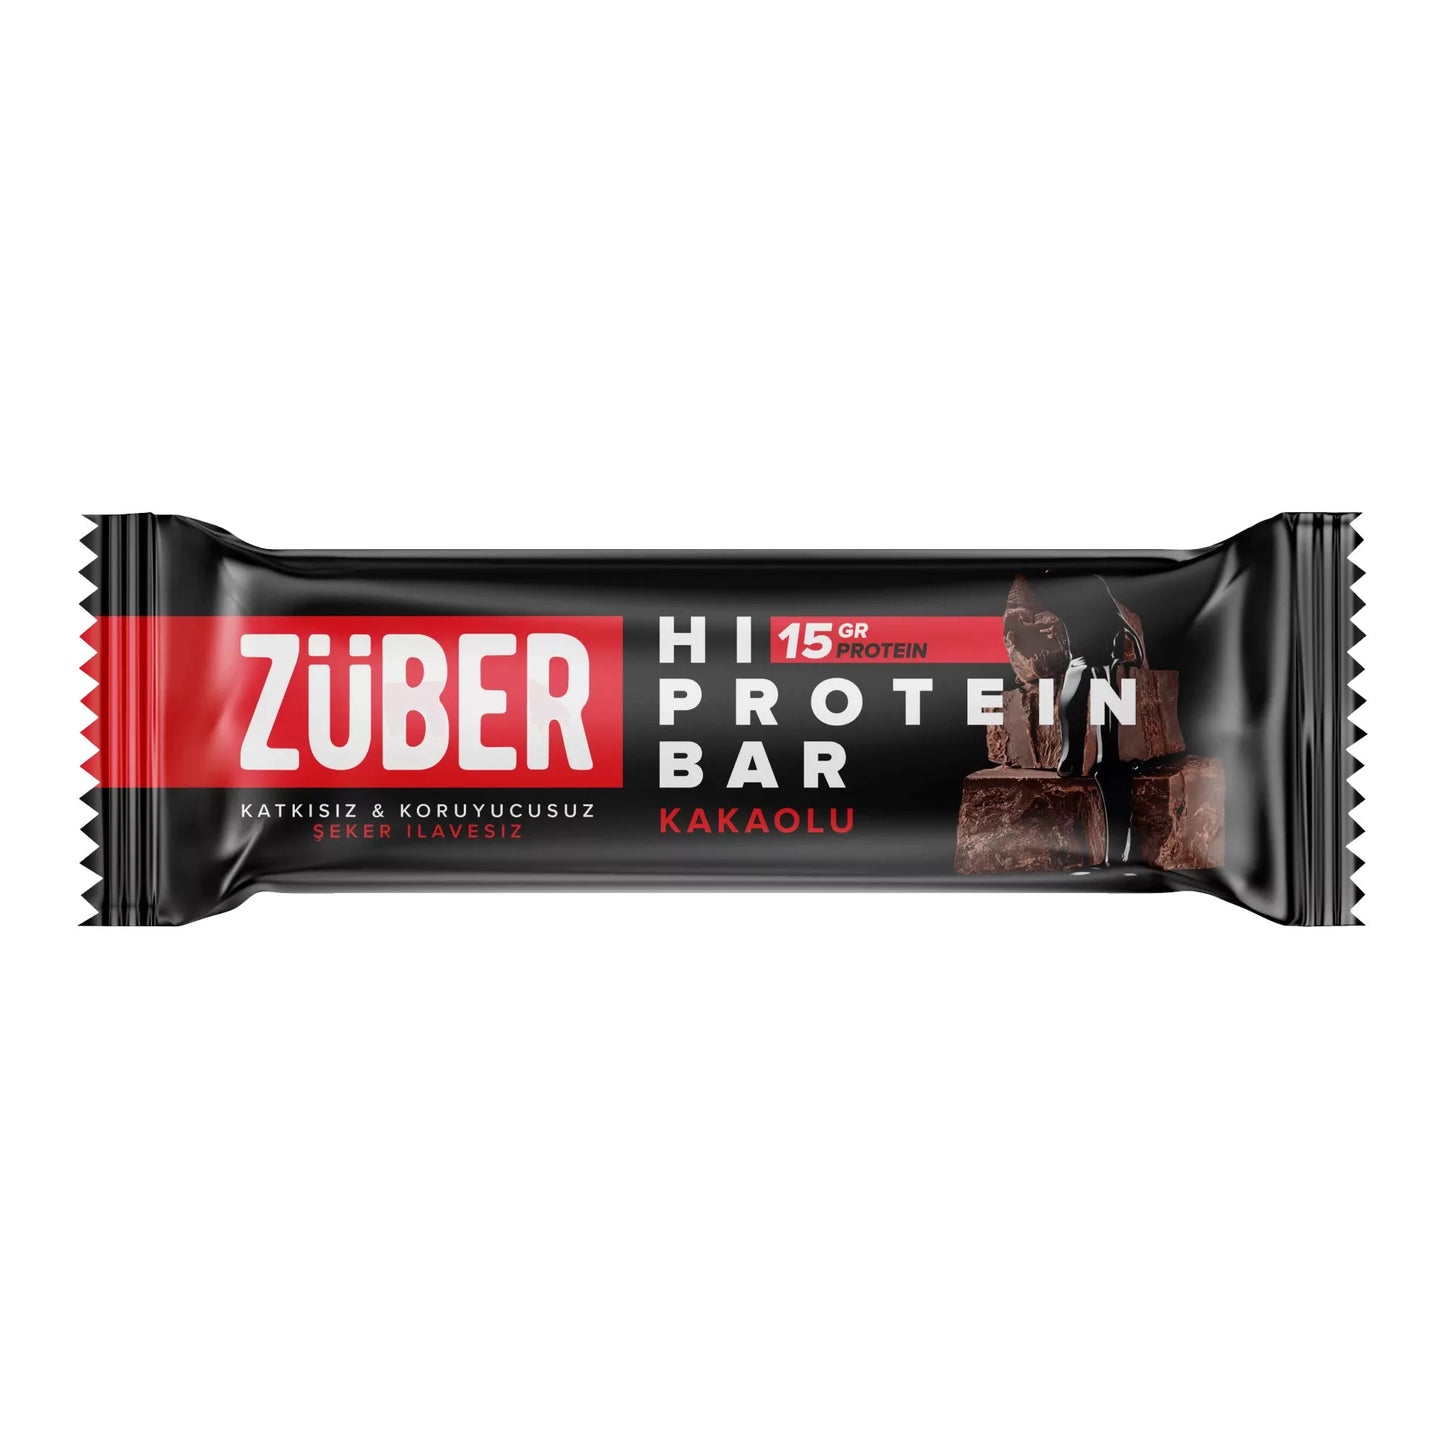 Züber Kakaolu Yüksek Protein Bar